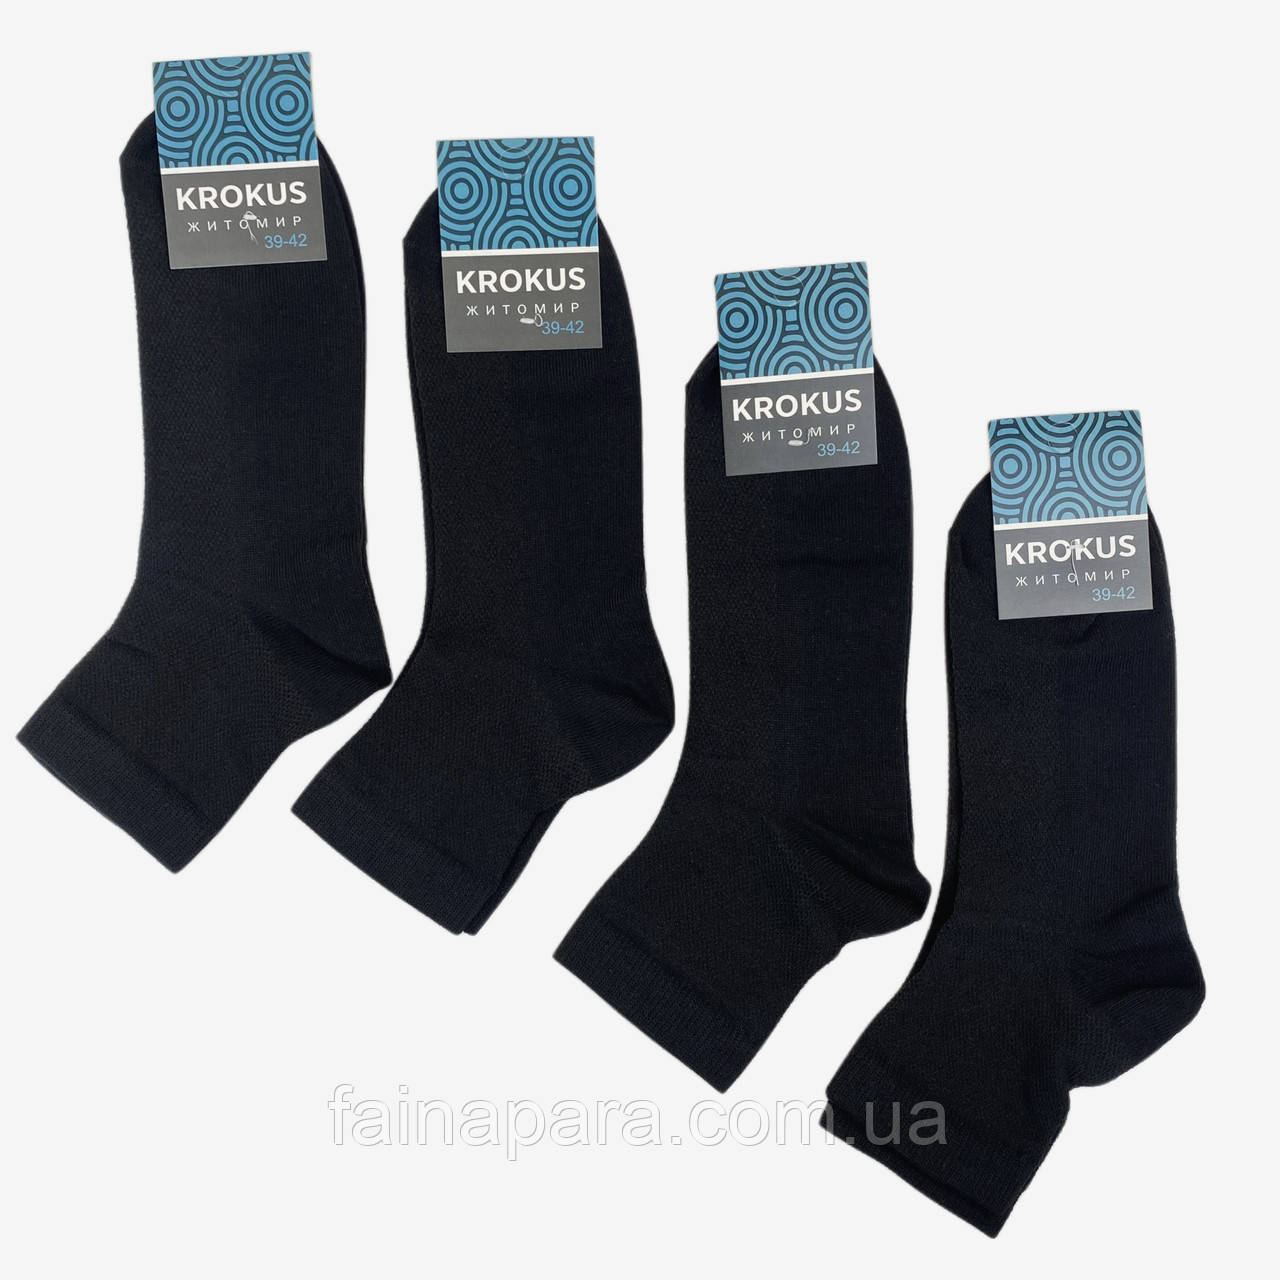 Чоловічі бавовняні середні шкарпетки сітка чорного кольору Krokus  39-42